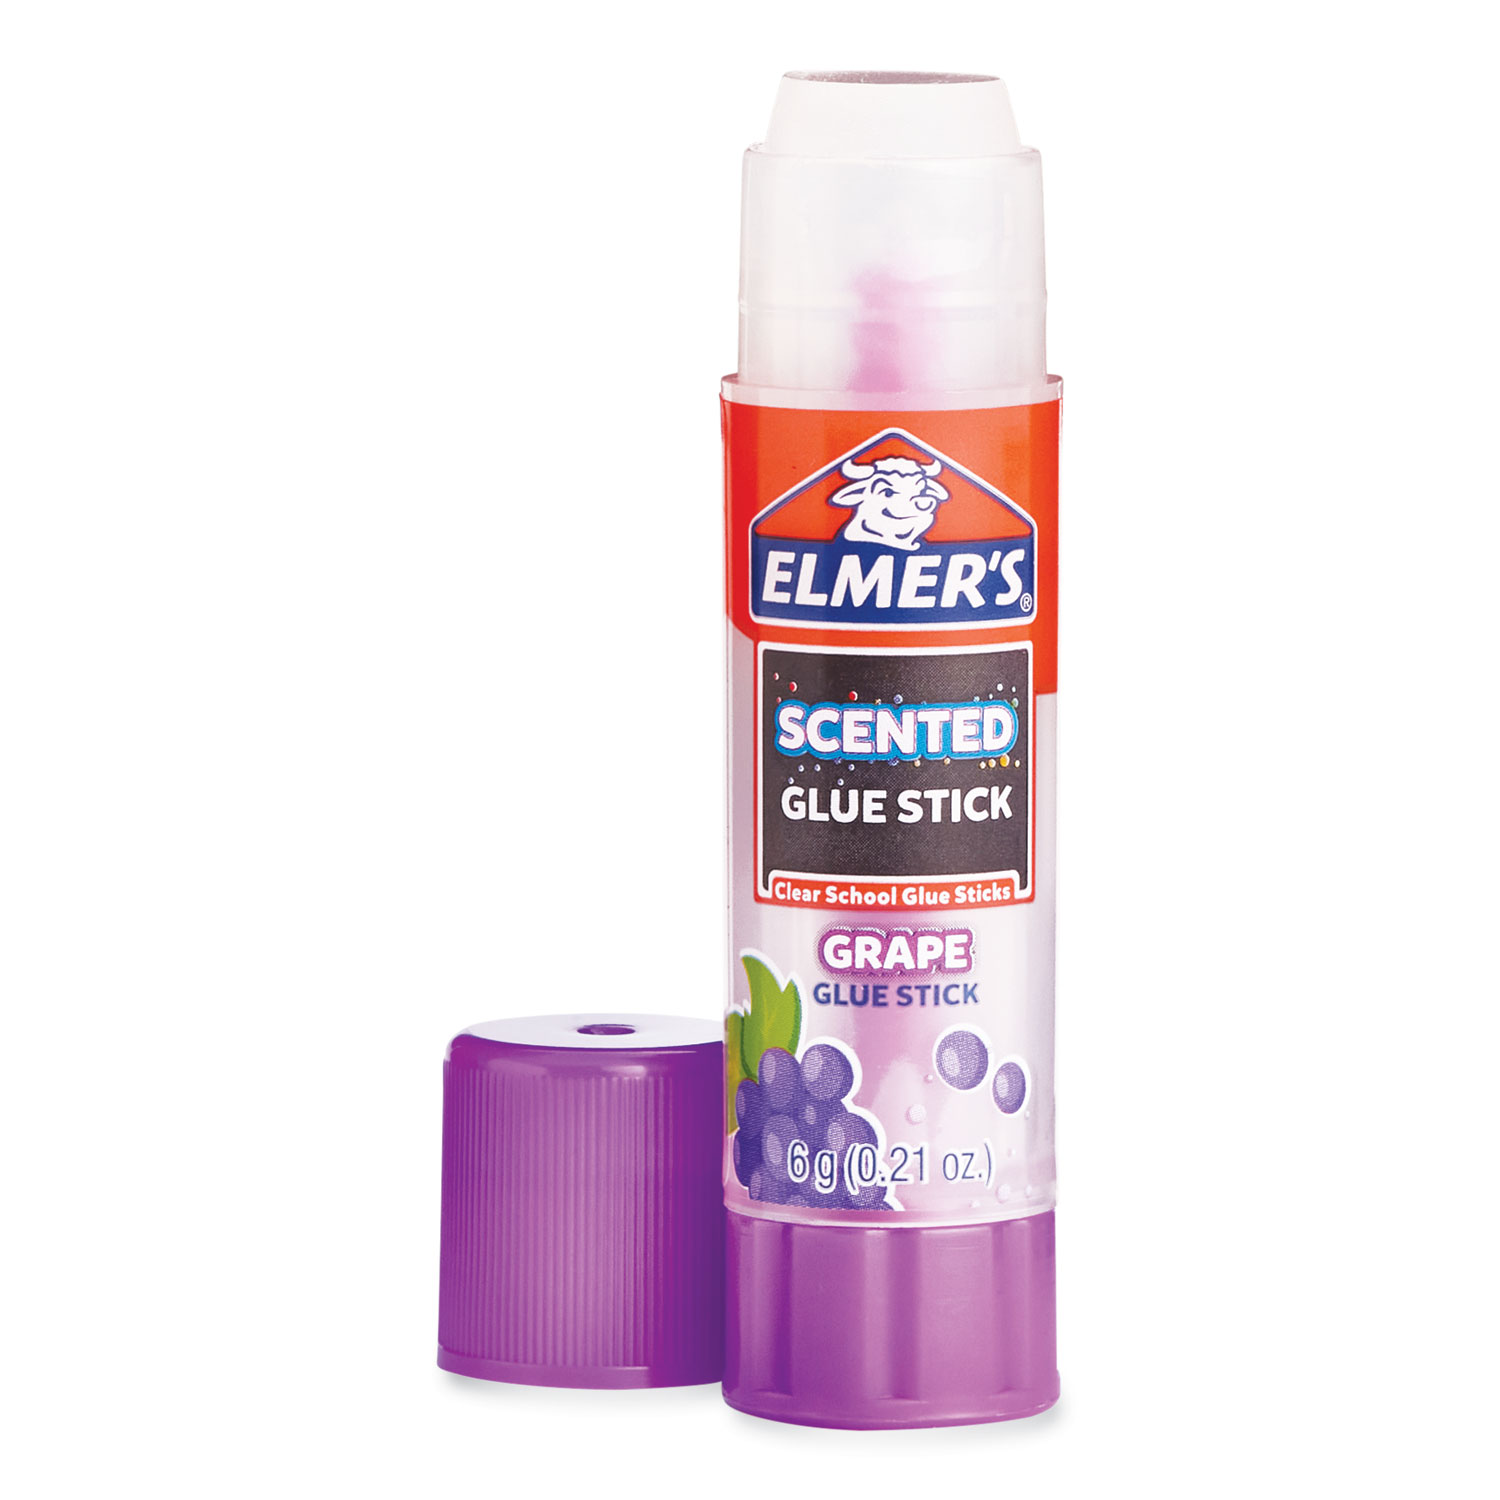 Elmer’s Scented Glue Sticks